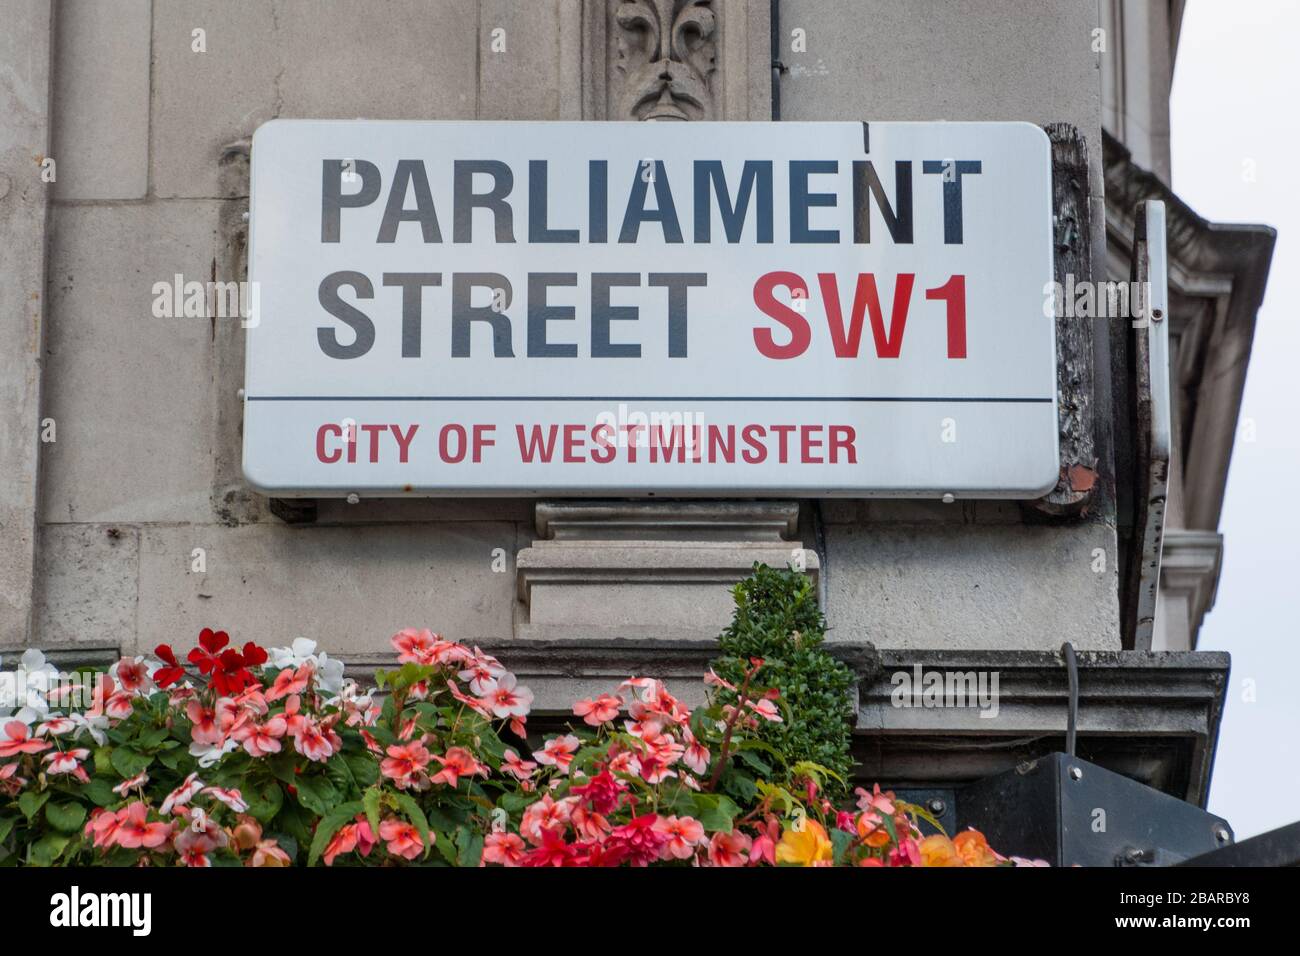 LONDON- Parliament Street SW1, cartello stradale, City of Westminster. Una strada famosa e la posizione di molti edifici governativi britannici Foto Stock